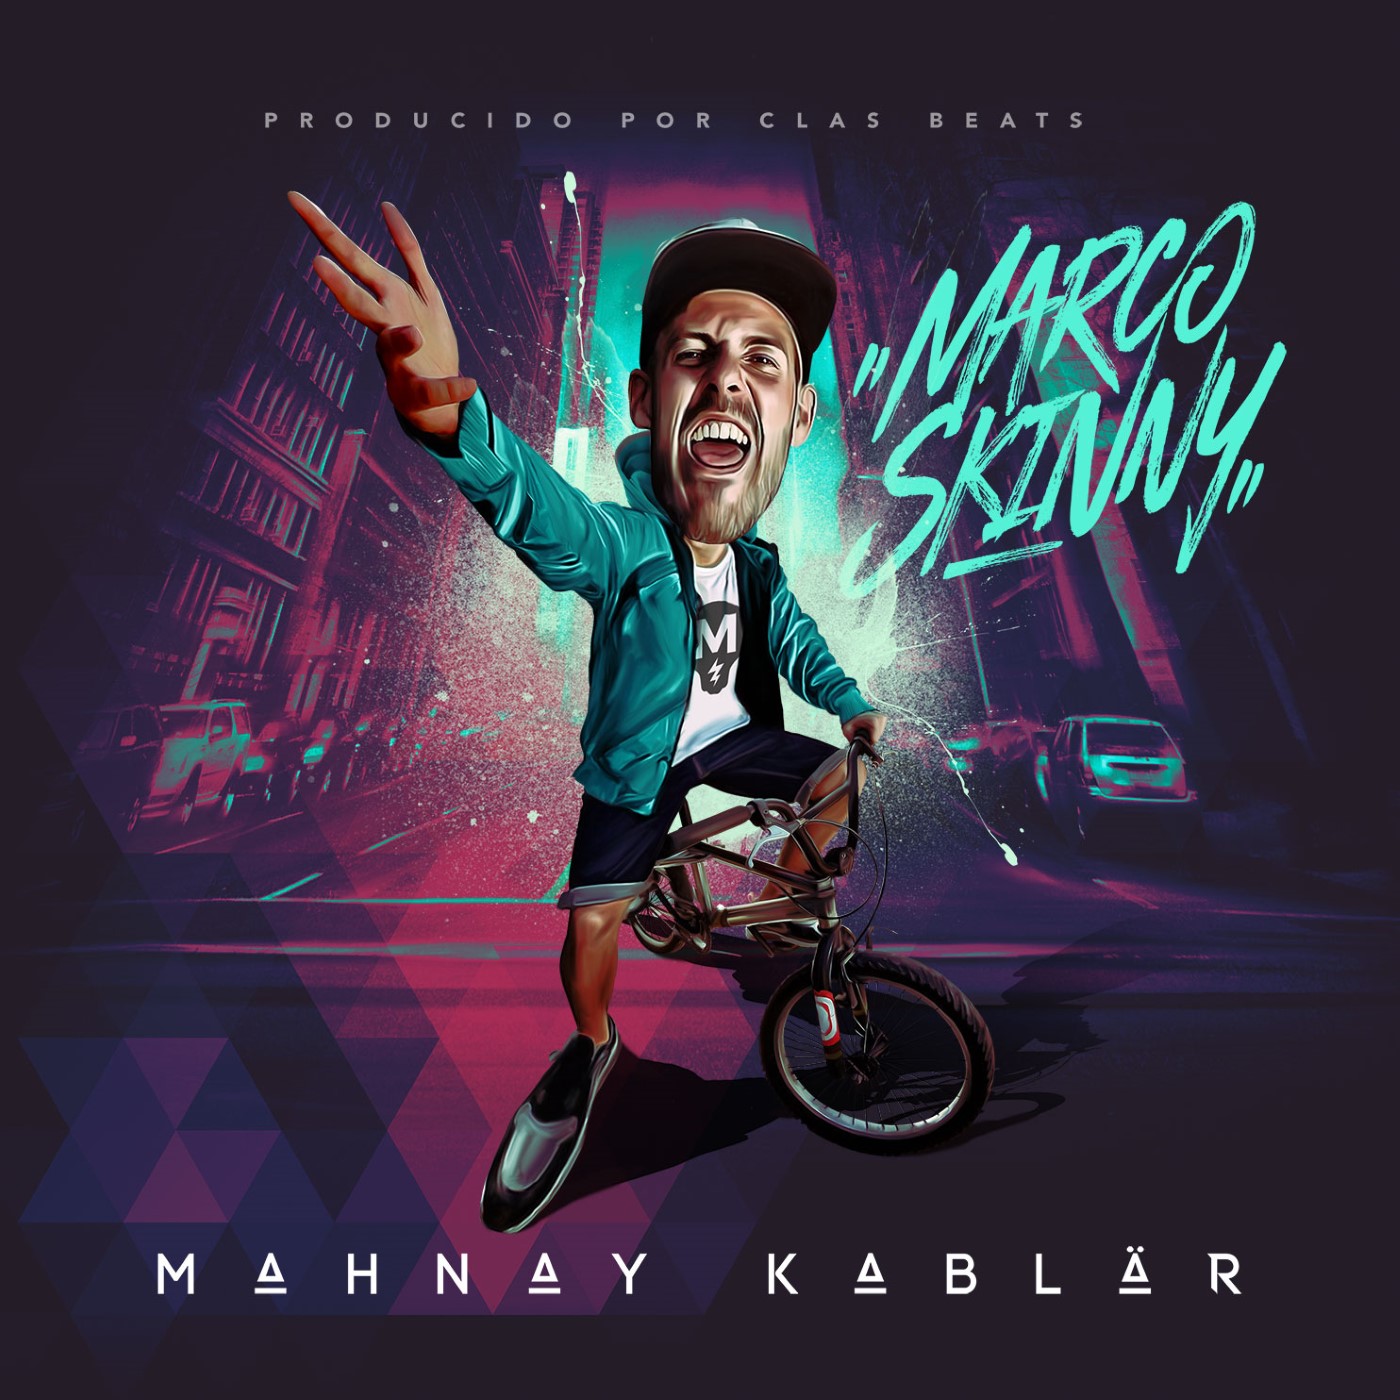 Marco Skinny - Mahnay kablär (Escucha)